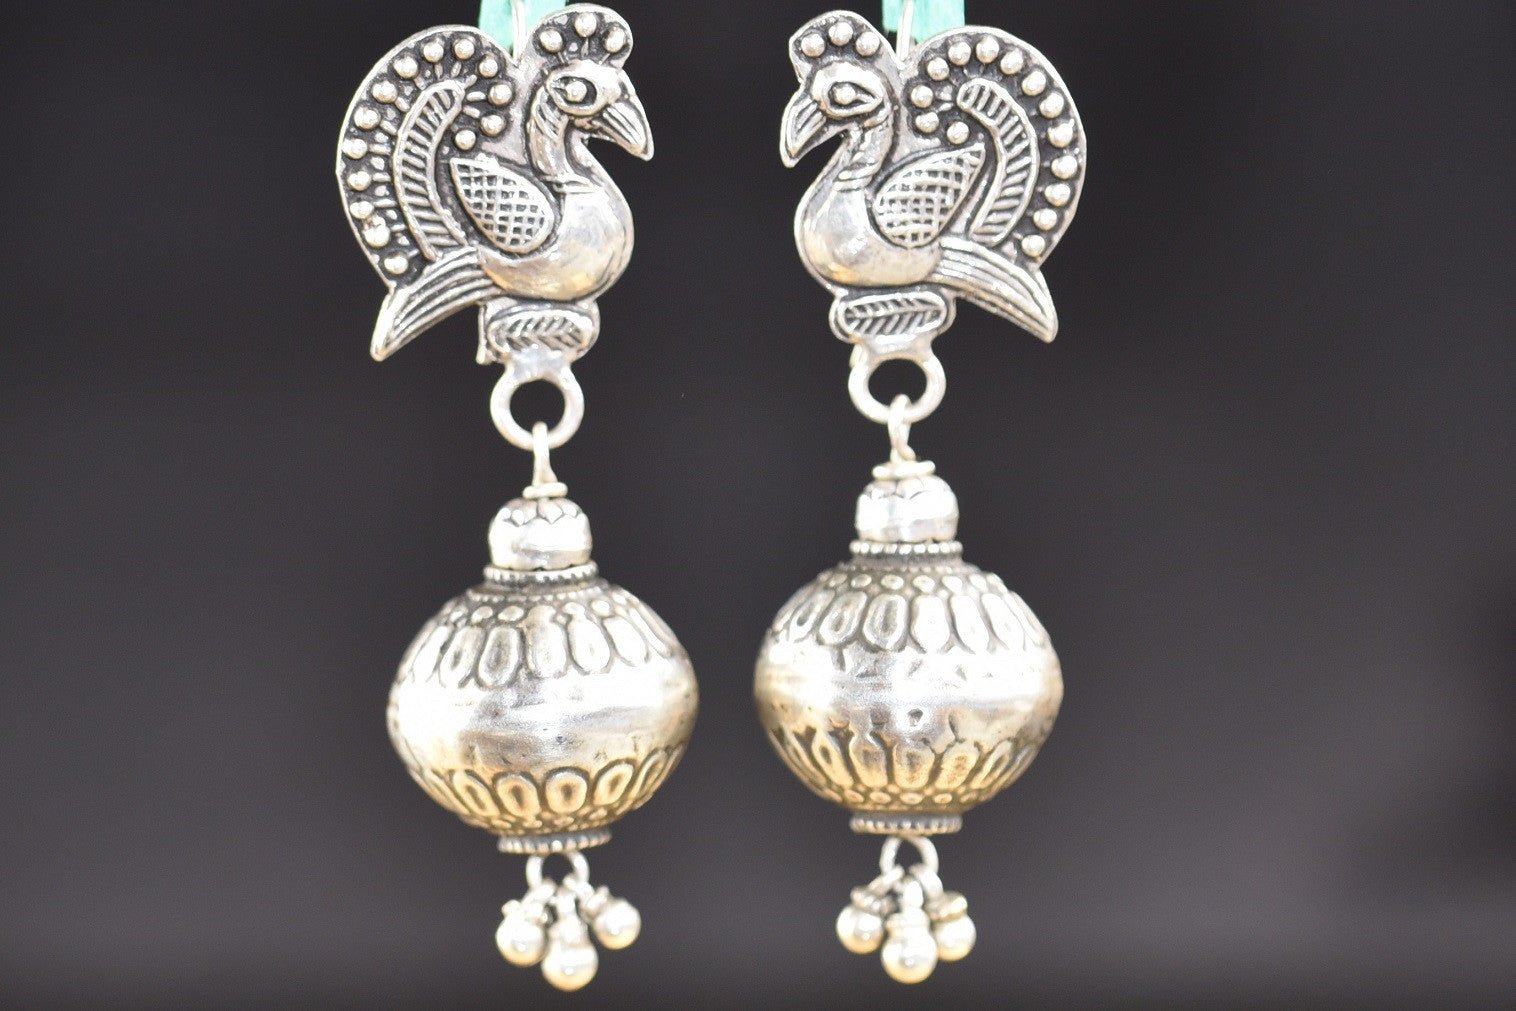 20a549-silver-amrapali-earrings-bird-embossed-d